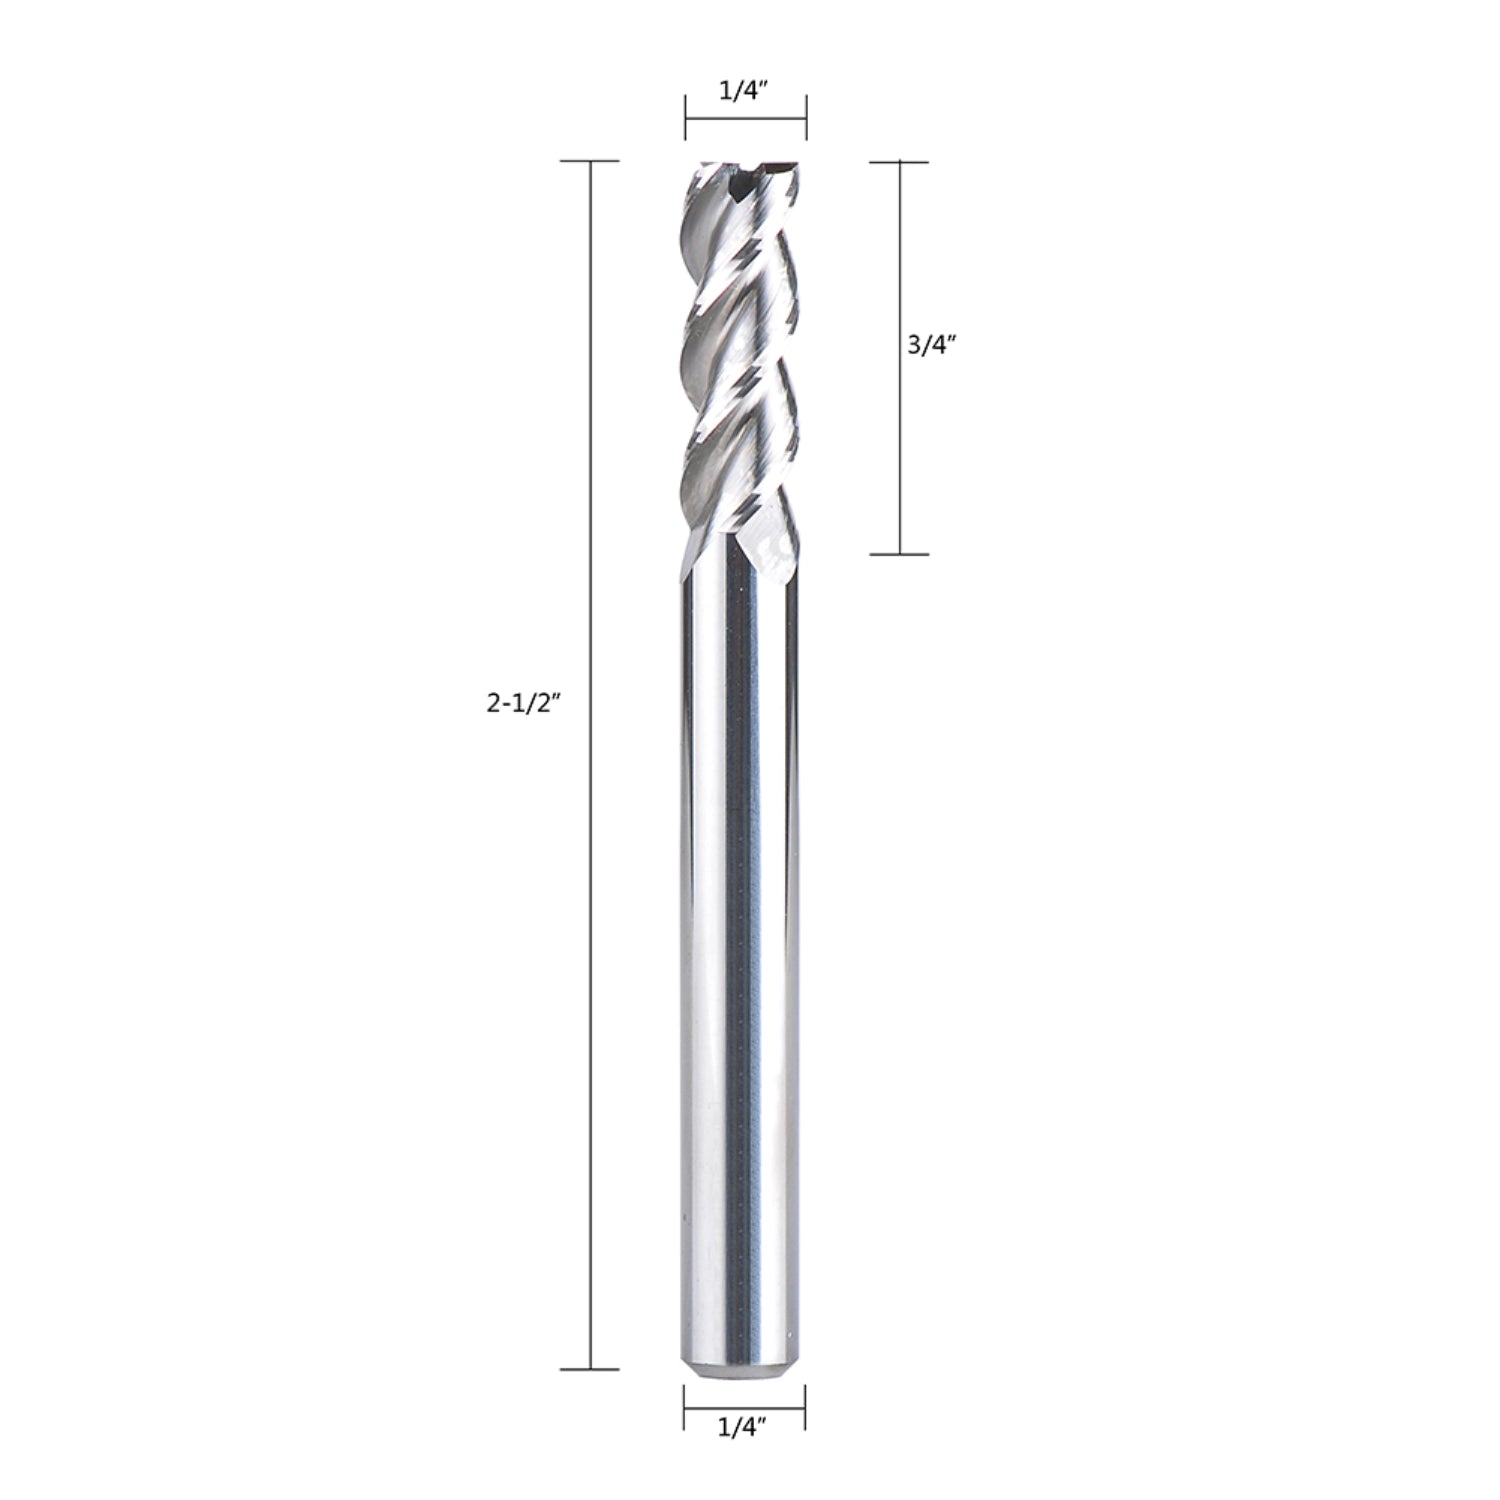 SpeTool 1/4 End Mill for Aluminum Cut 3 Flute CNC Router Bit Non-Ferrous Metal